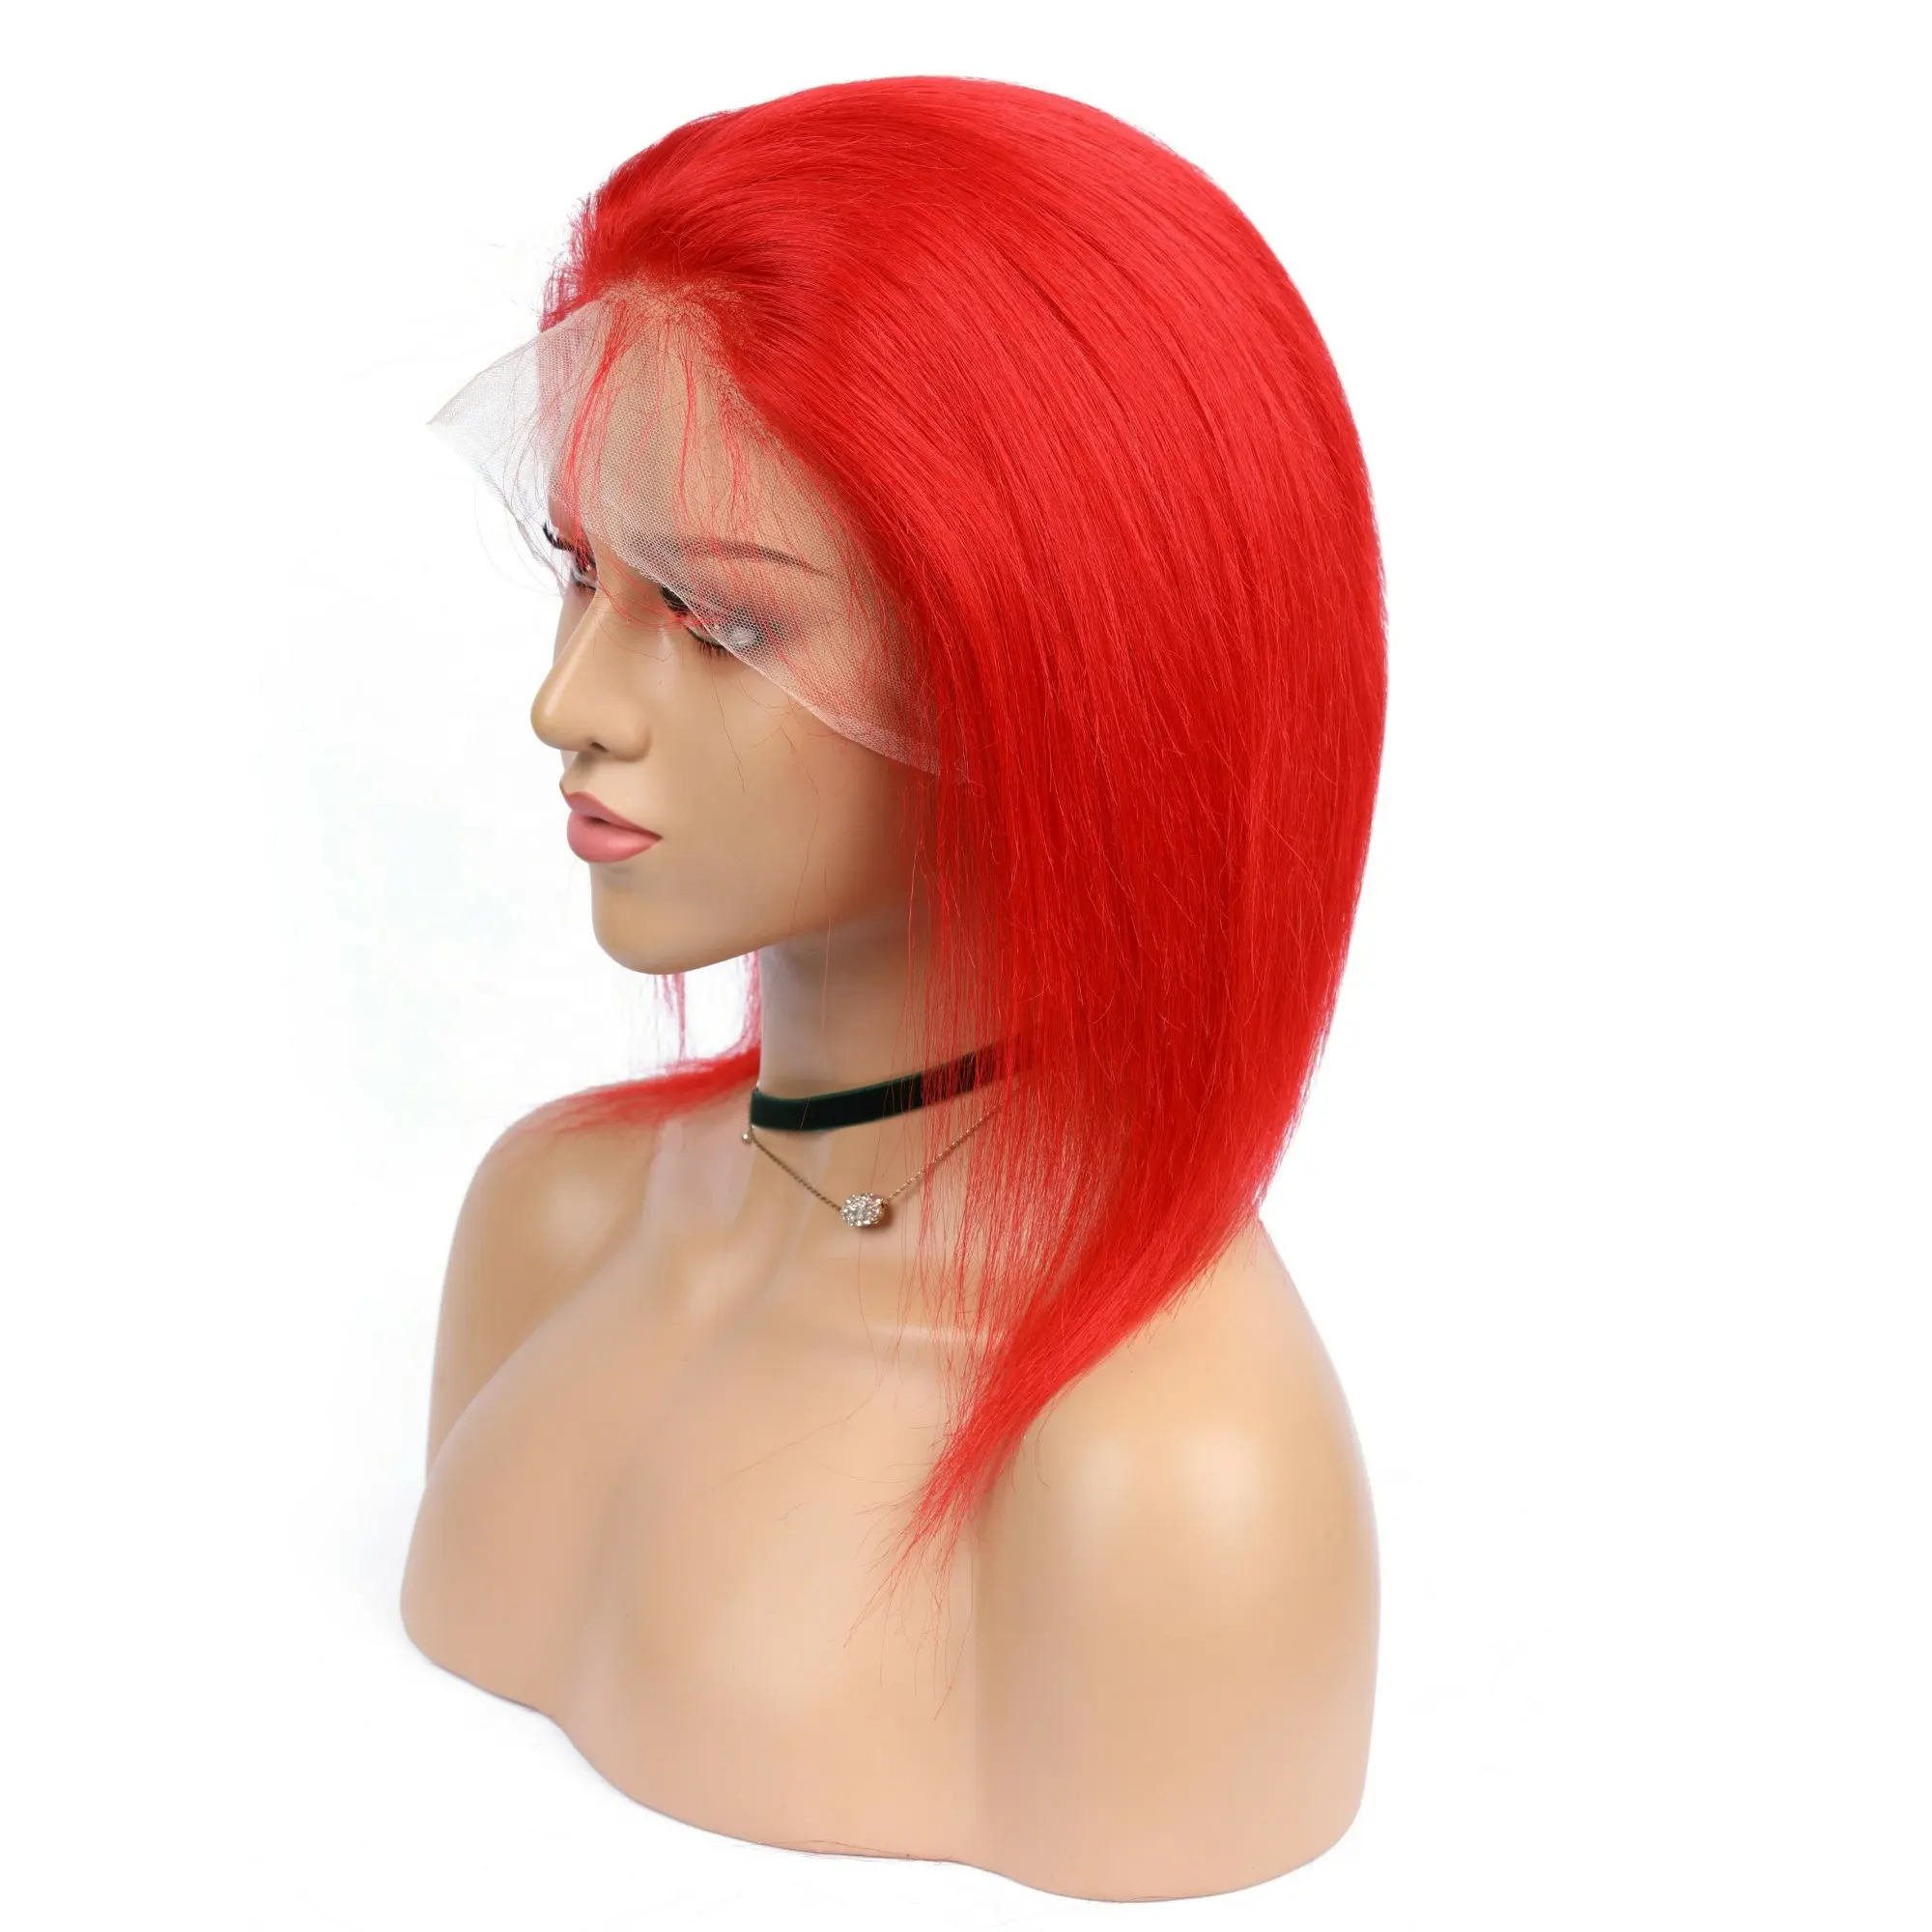 Perruque bob lace front wig naturelle pixie, cheveux humains non courts, couleur rouge, cuticule et vierge, perte de cheveux, densité moyenne